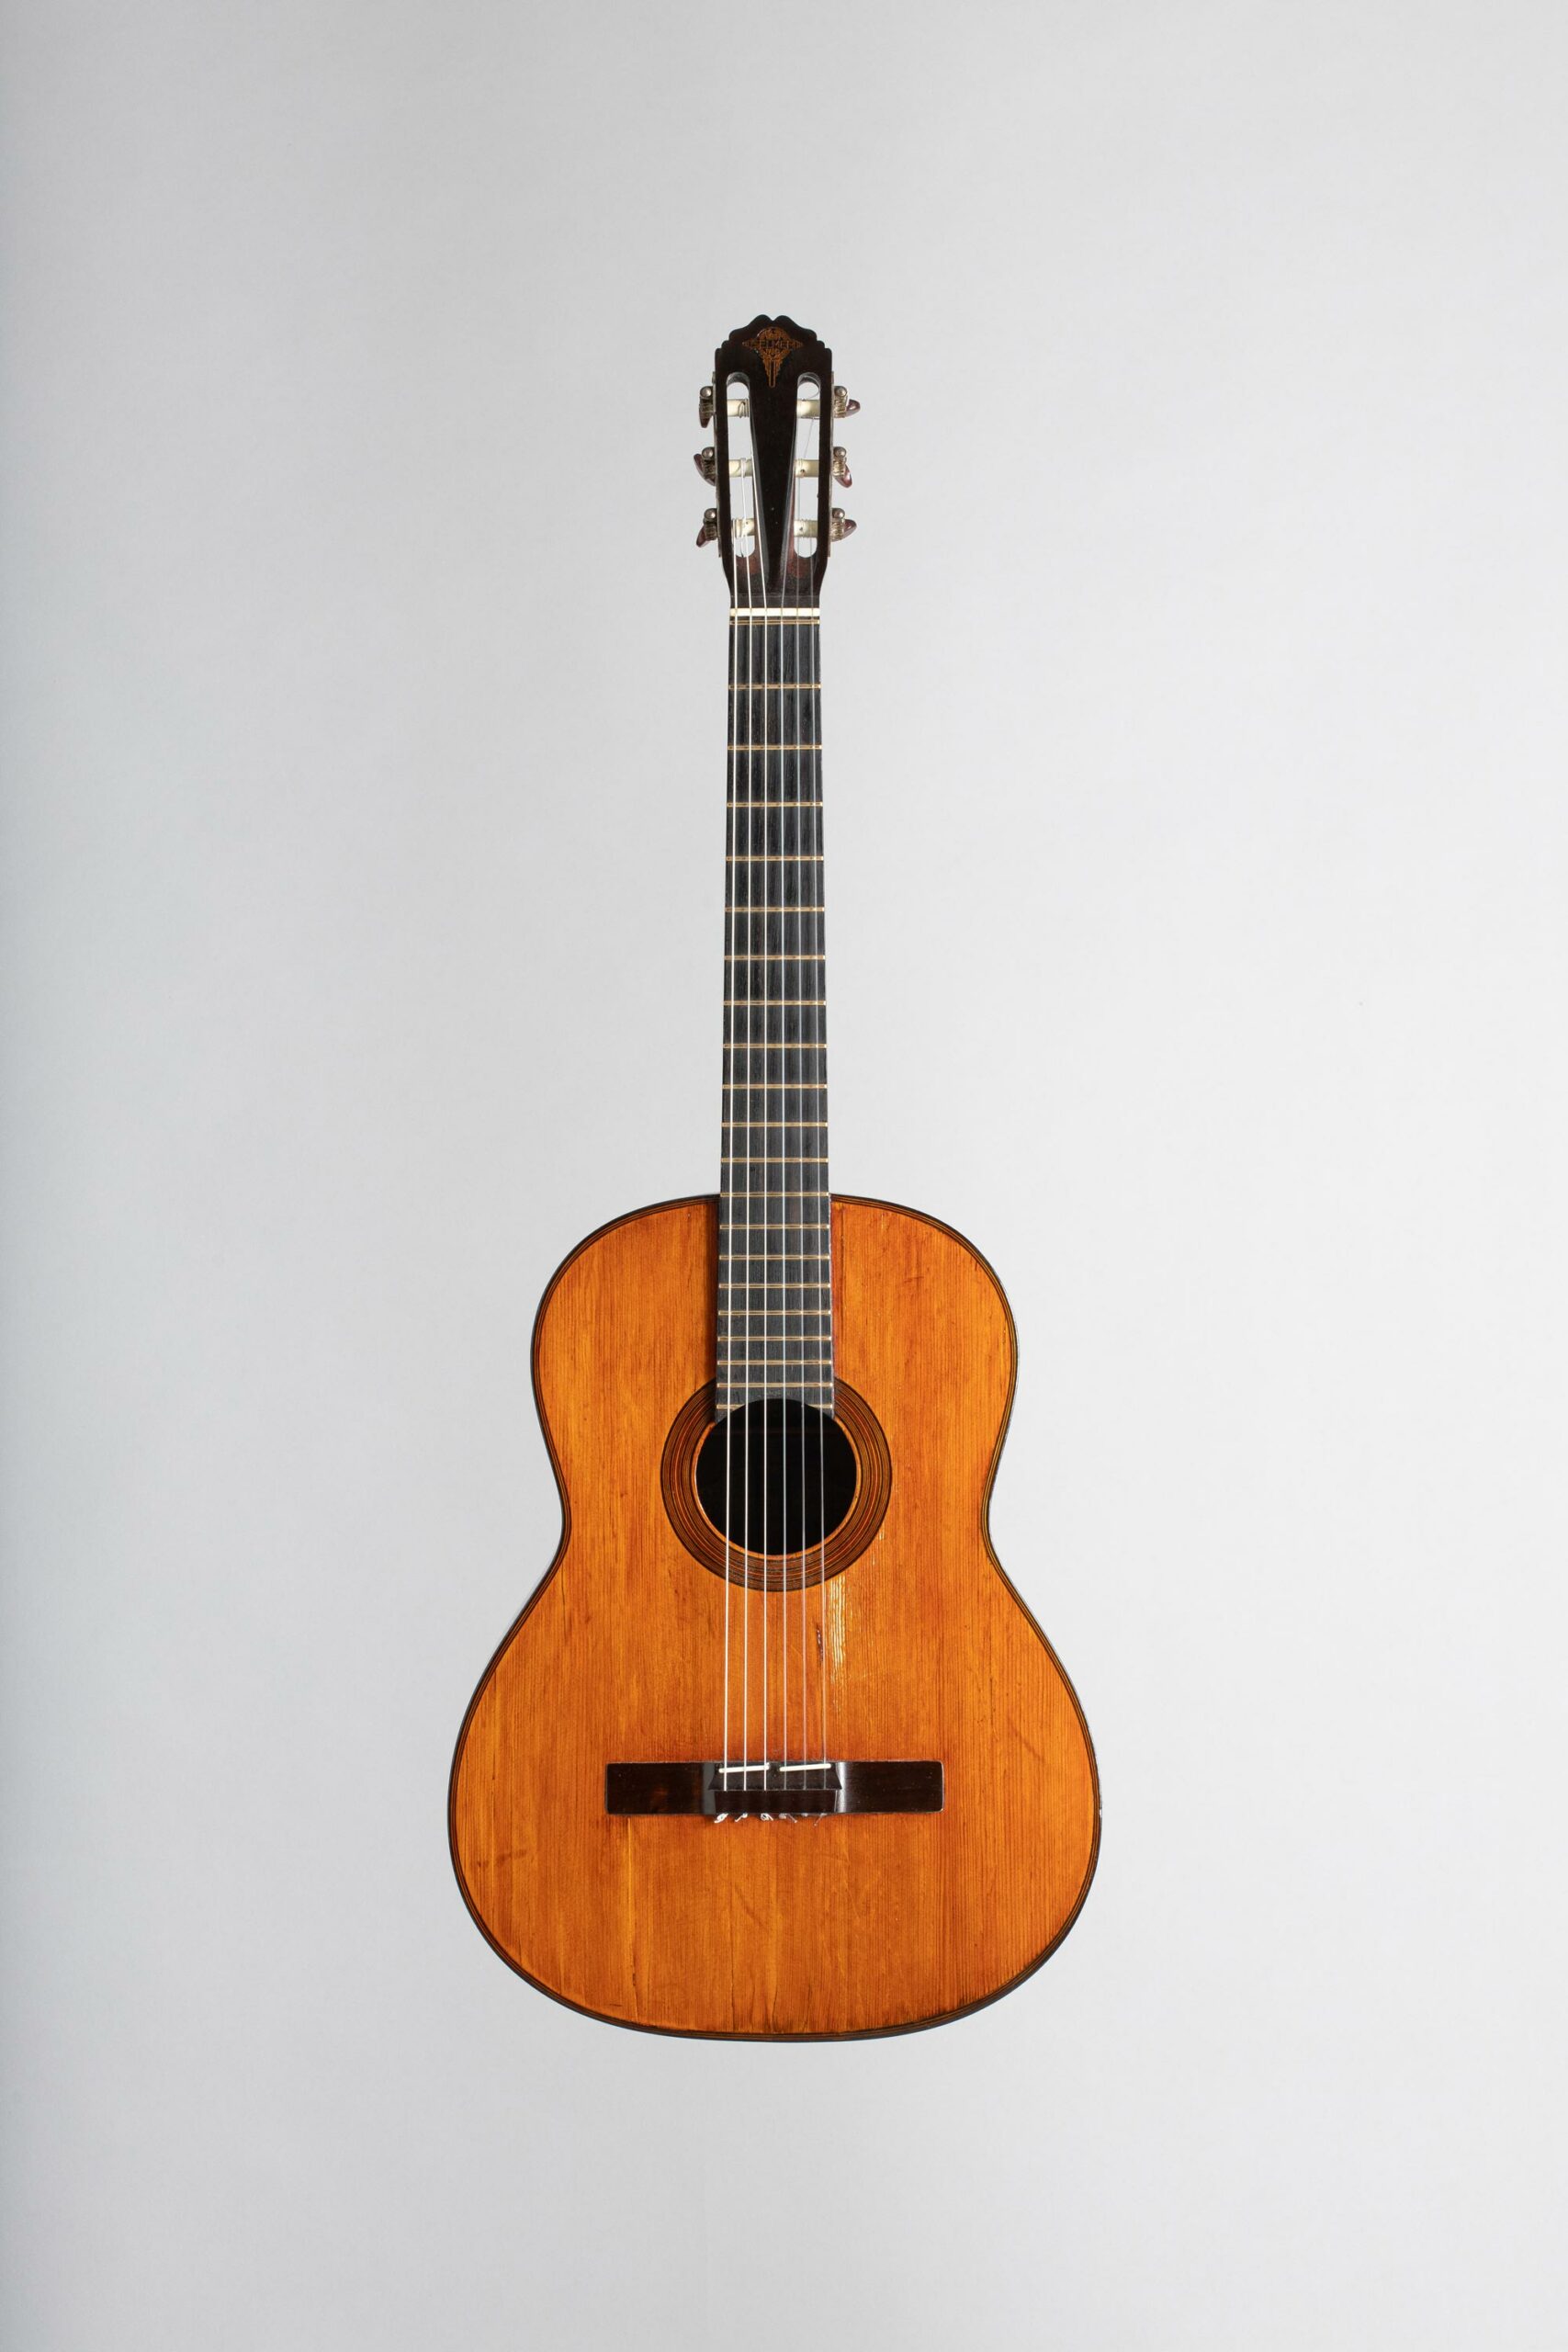 Guitare de marque SELMER, modèle Classique n° 550, faite en 1942, Vichy Enchères, 5 novembre 2022